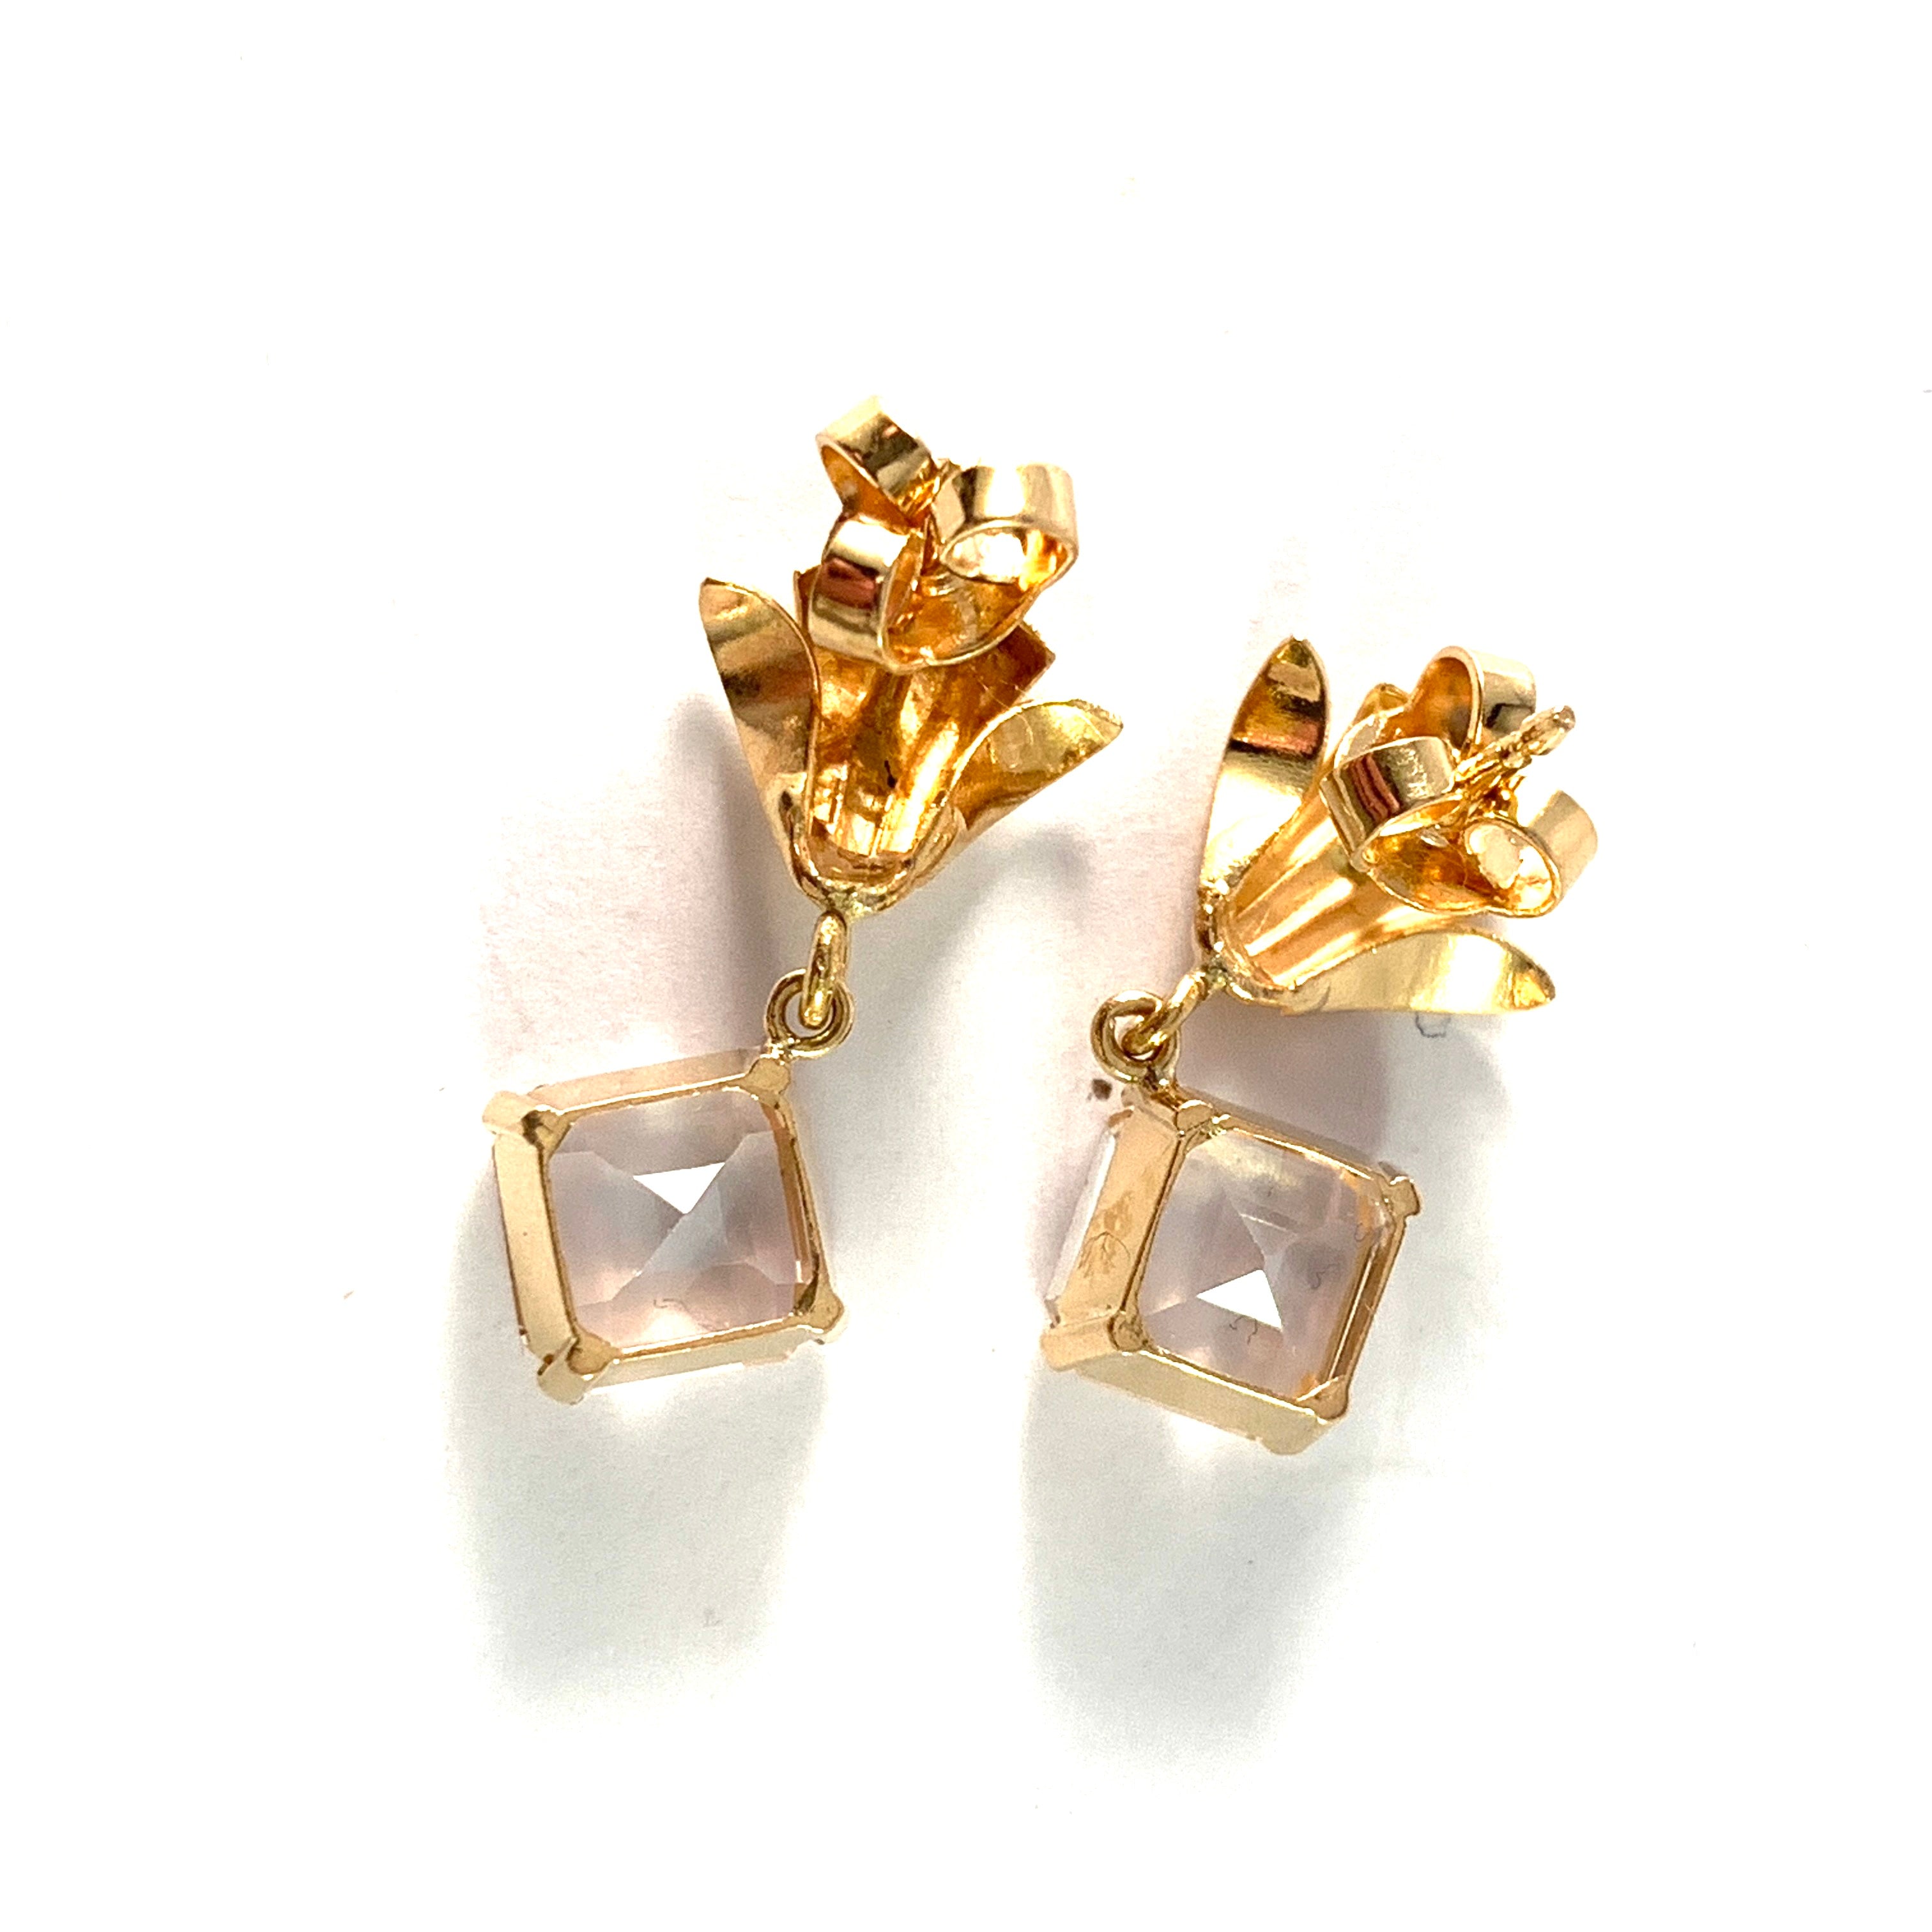 J Petterson, Sweden c 1950s. Mid Century 18k Gold Rock Crystal Earrings.